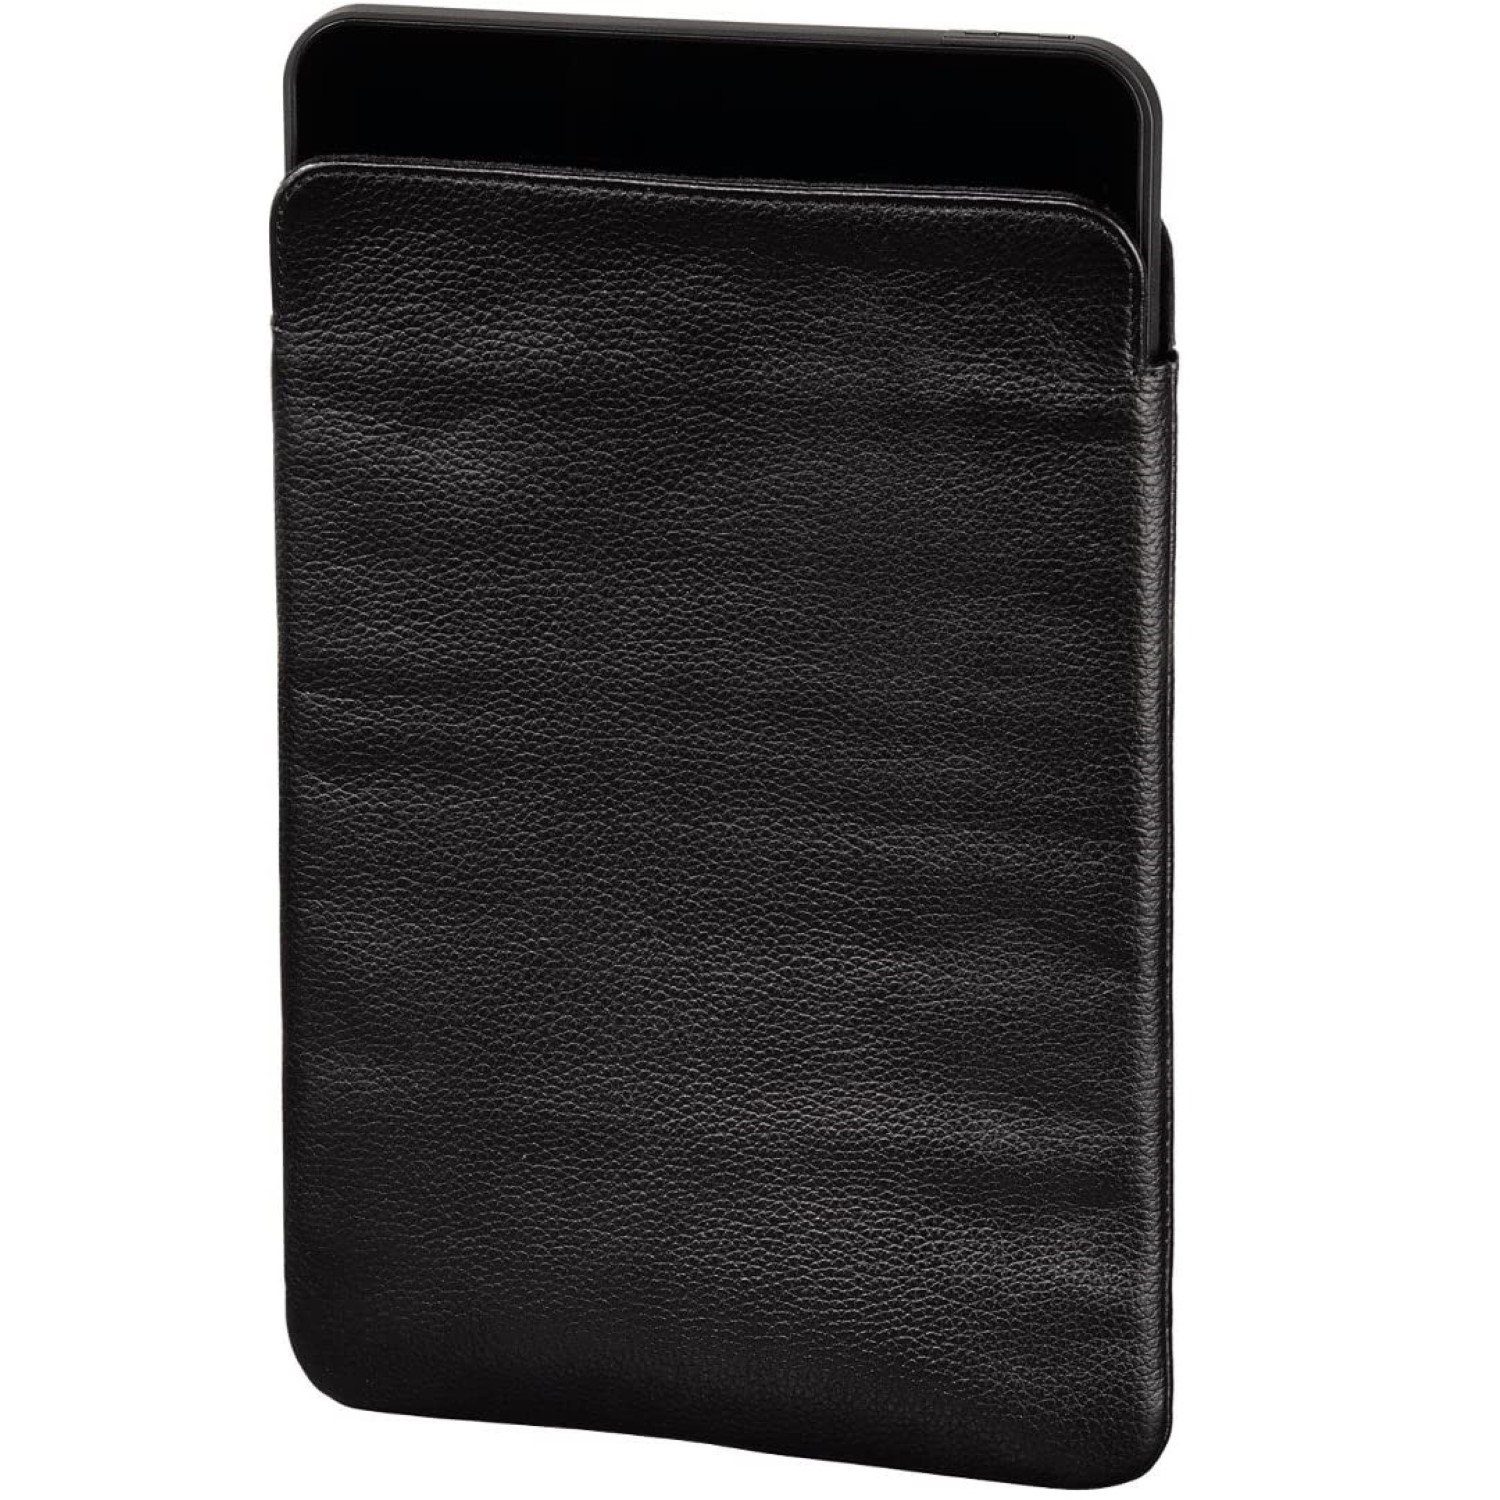 Hama Tablet-Hülle Sleeve Slim Leder Schwarz bis 10,5", Anti-Kratz Sleeve, passend für Tablet PC iPad 9,7" bis 10,5" Zoll etc.